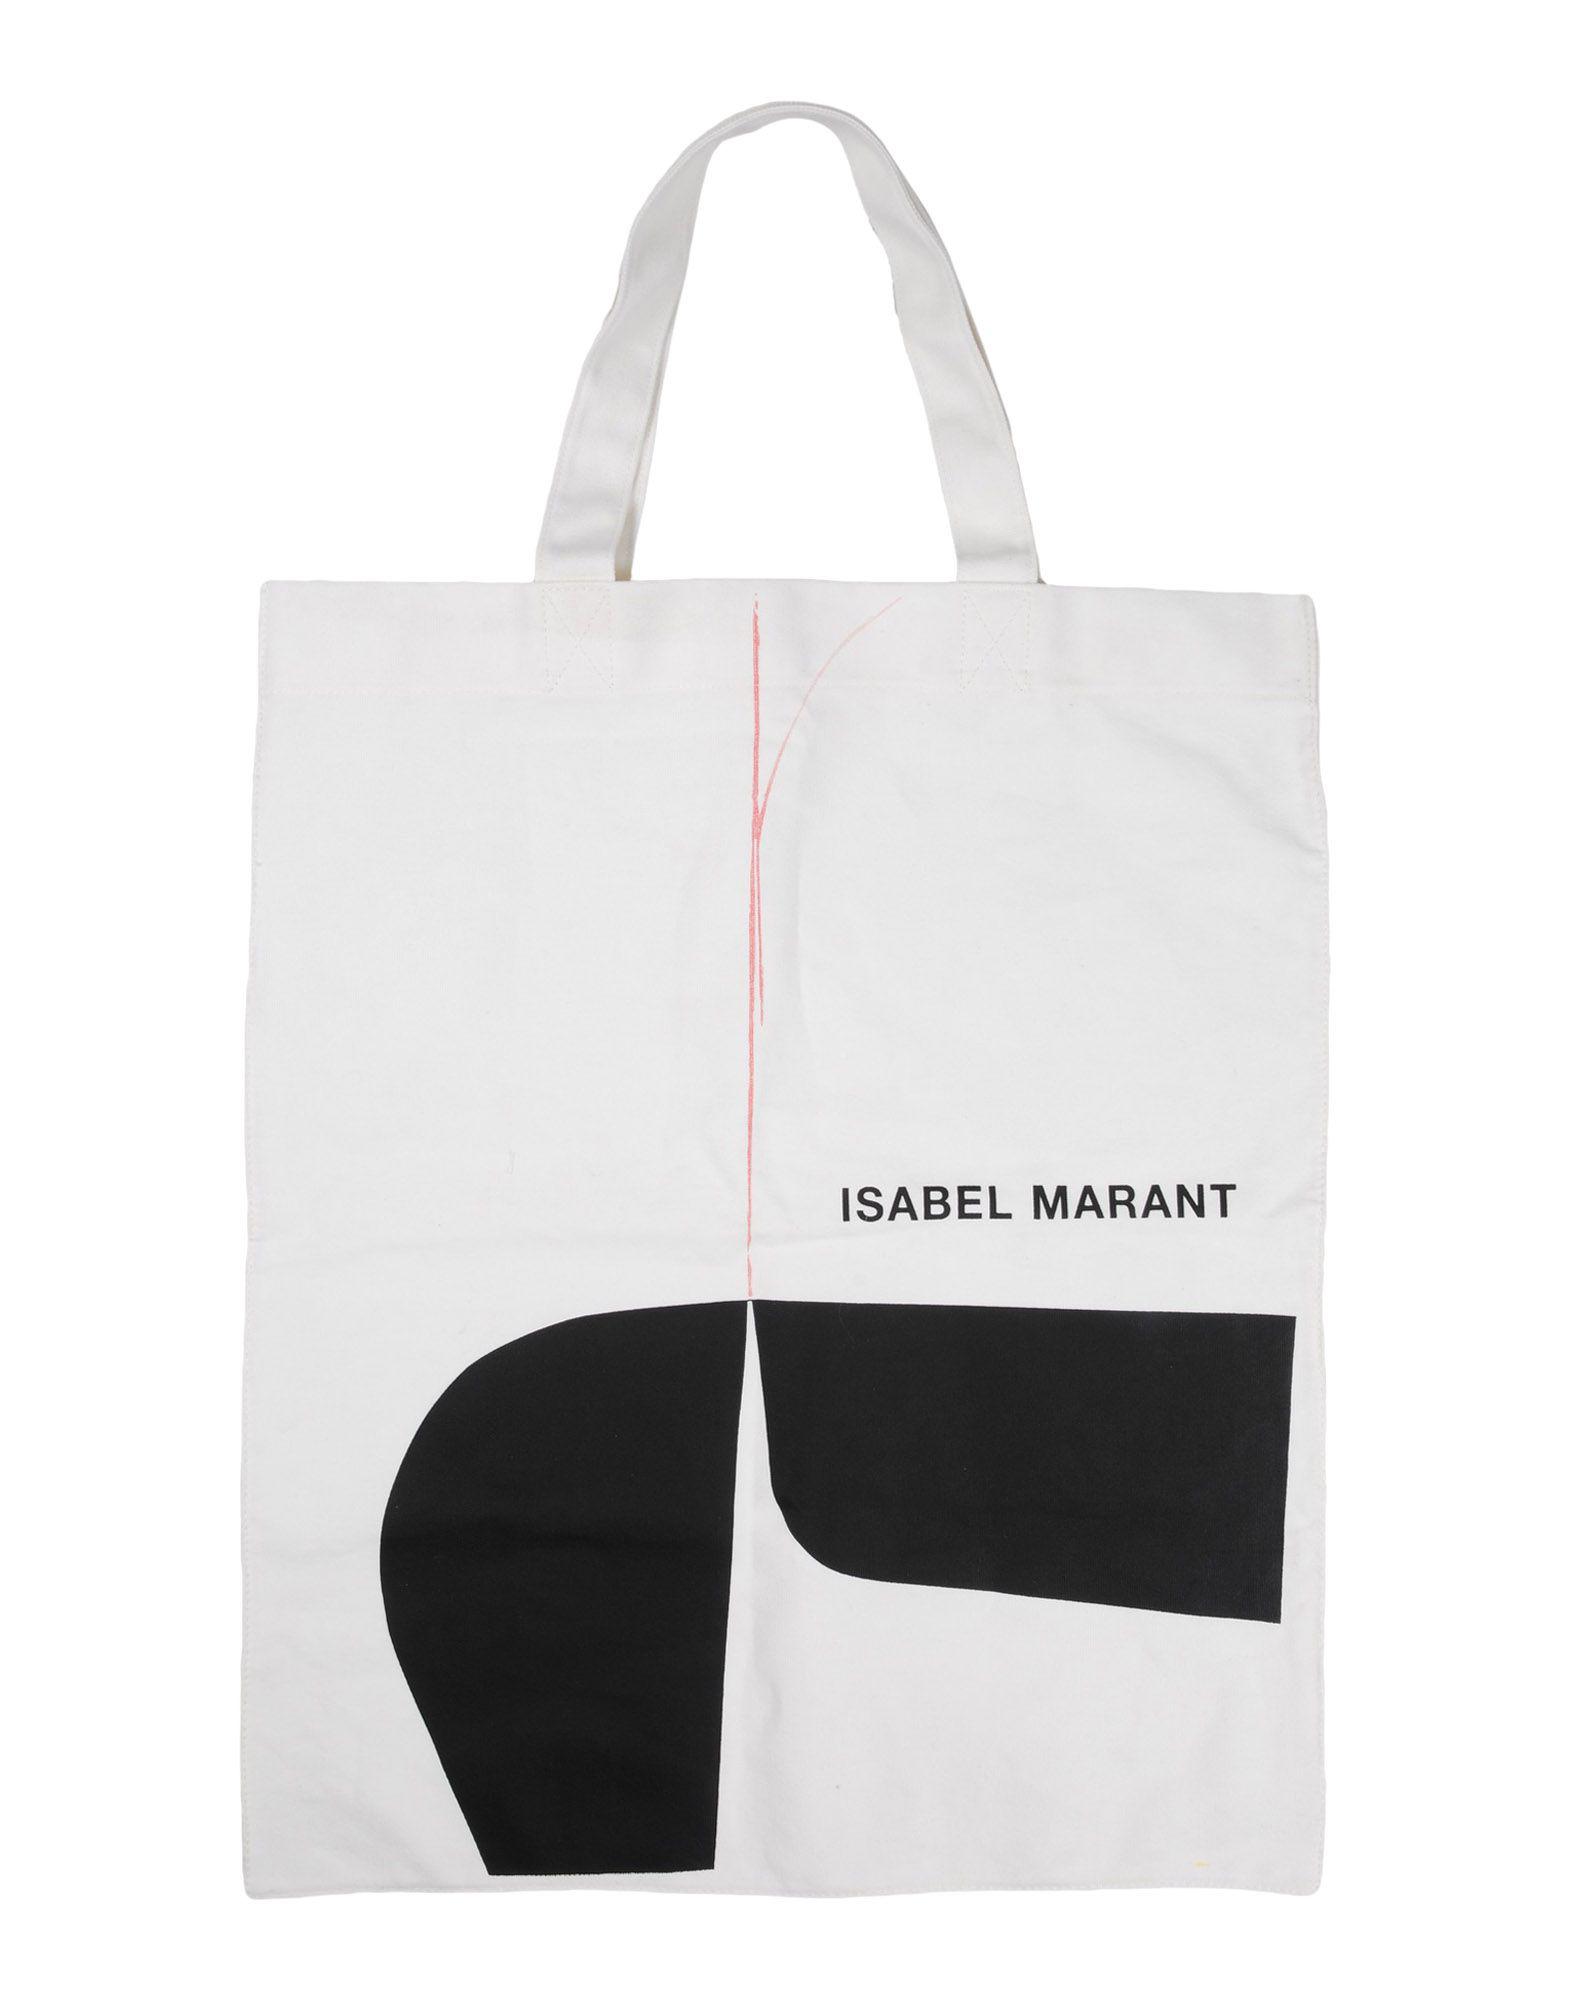 Settlers Pil klar Isabel Marant Handbag in White | Lyst